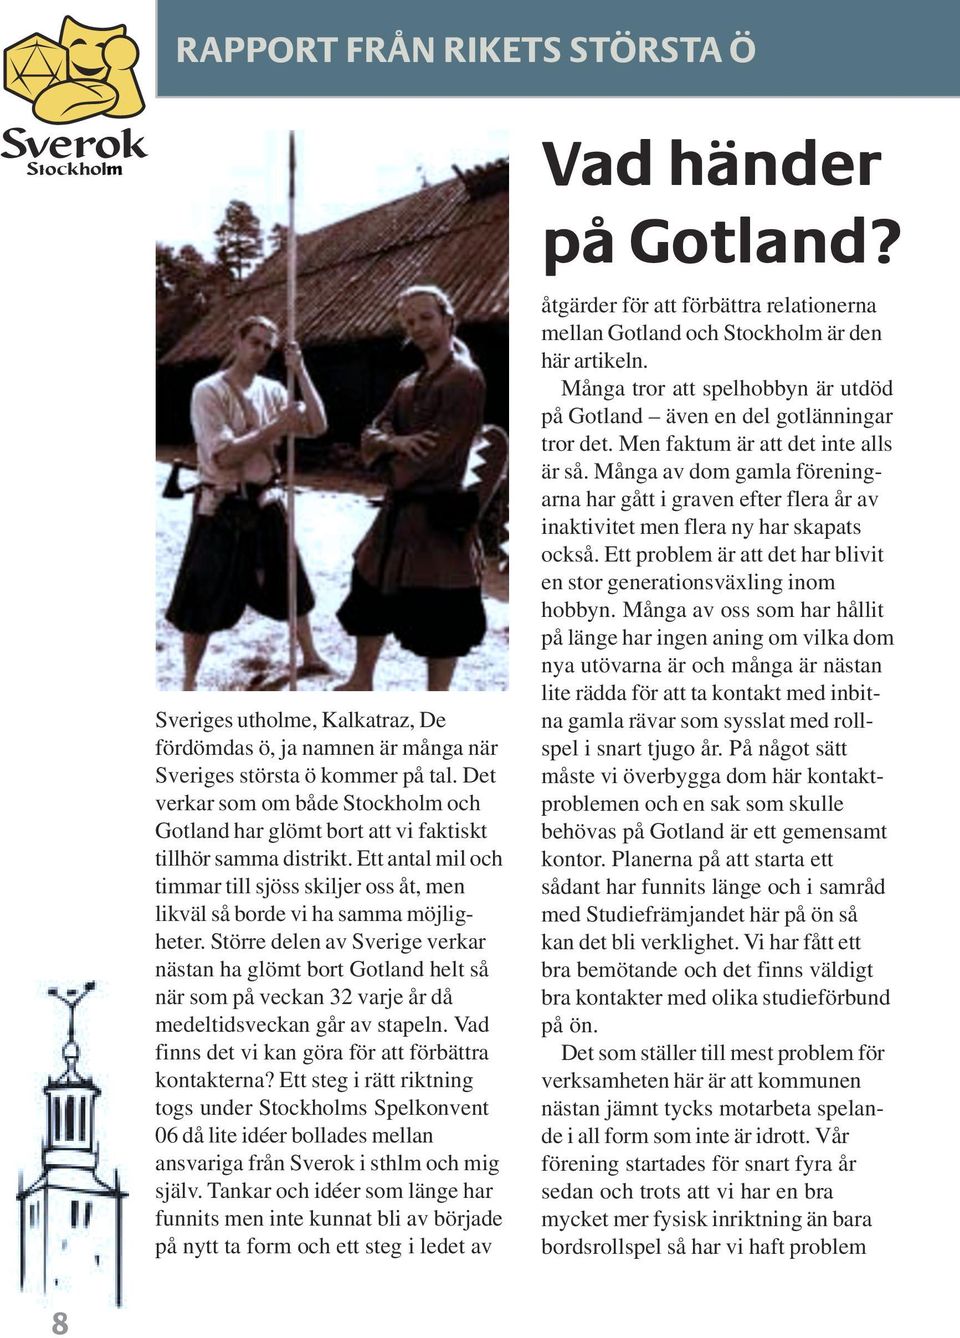 Större delen av Sverige verkar nästan ha glömt bort Gotland helt så när som på veckan 32 varje år då medeltidsveckan går av stapeln. Vad finns det vi kan göra för att förbättra kontakterna?